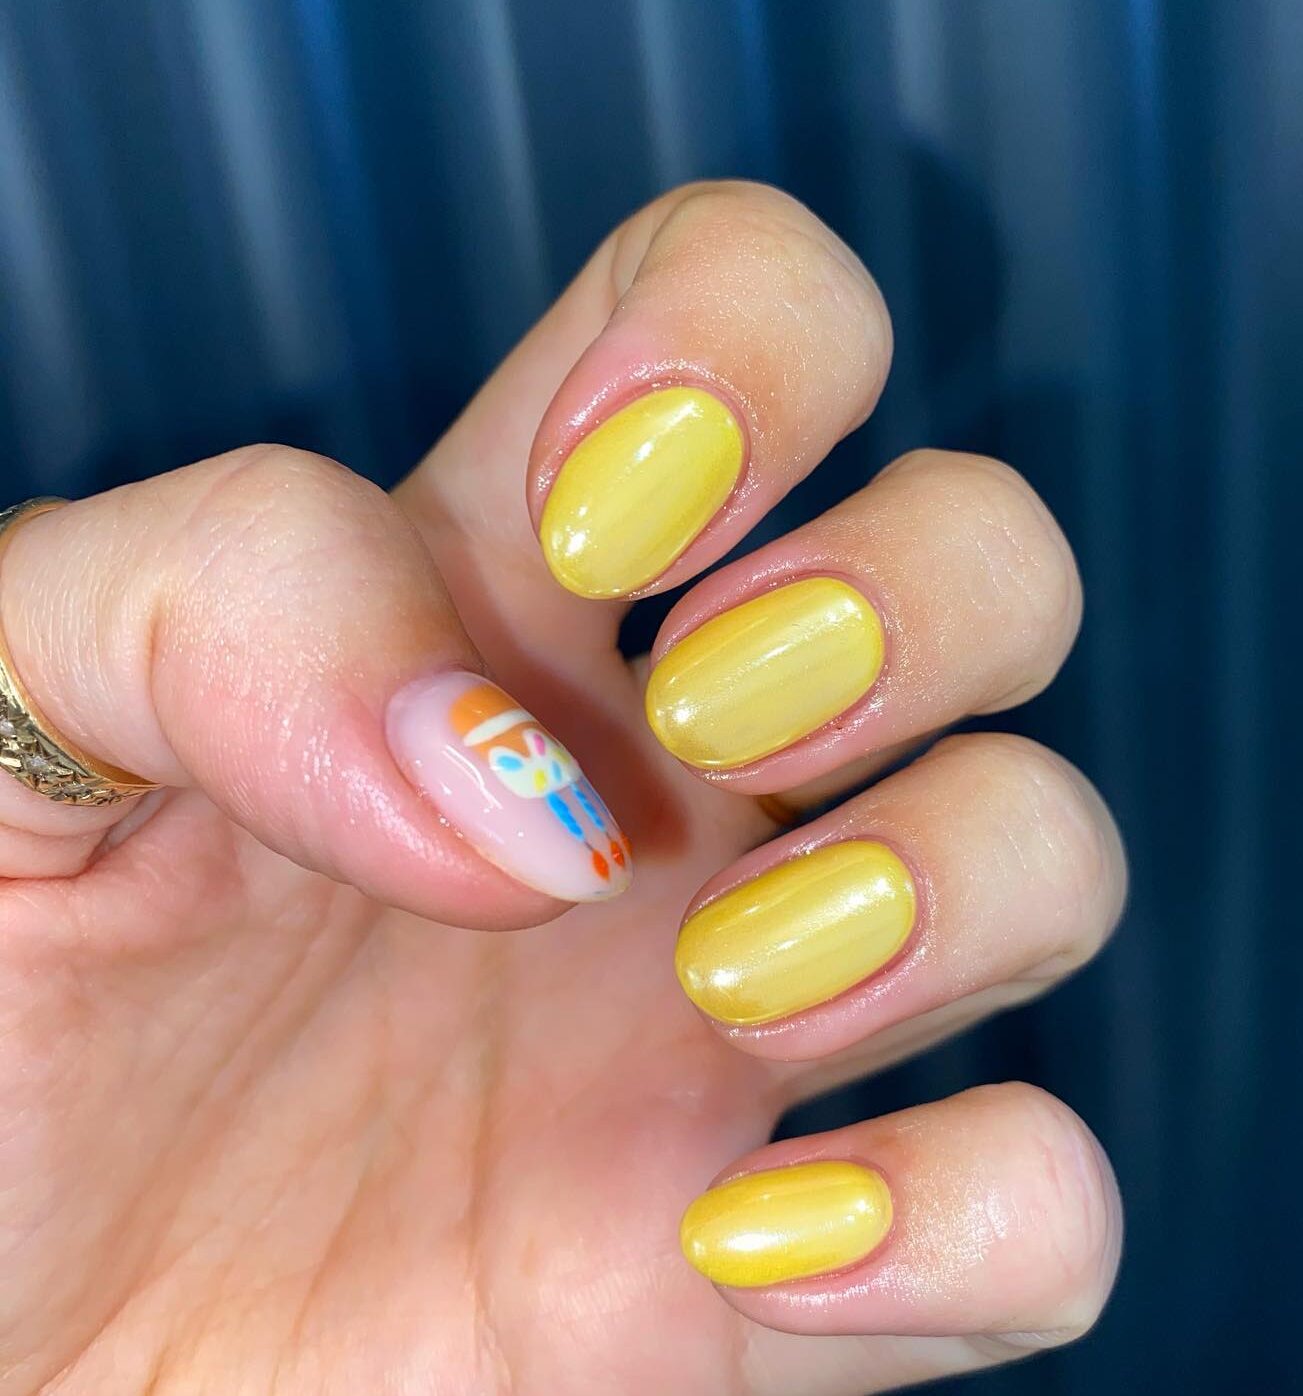 Esmalte de uñas amarillo con acabado brillante en uñas cortas y redondas.